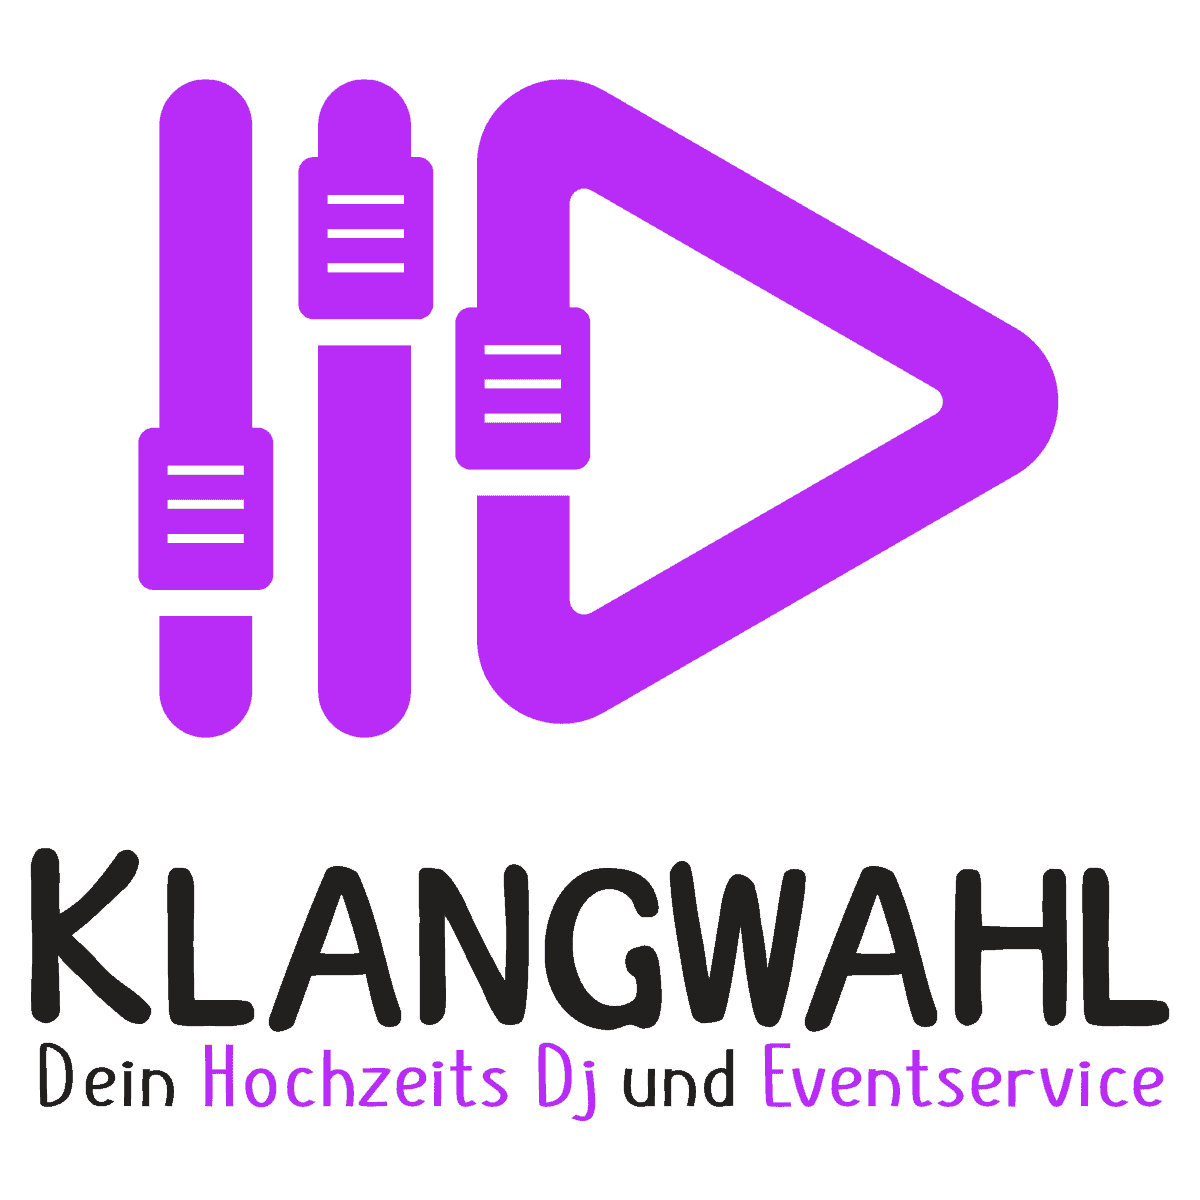 Klangwahl Hochzeits Dj und Eventservice Waltrop Nordrhein Westfalen NRW Logo